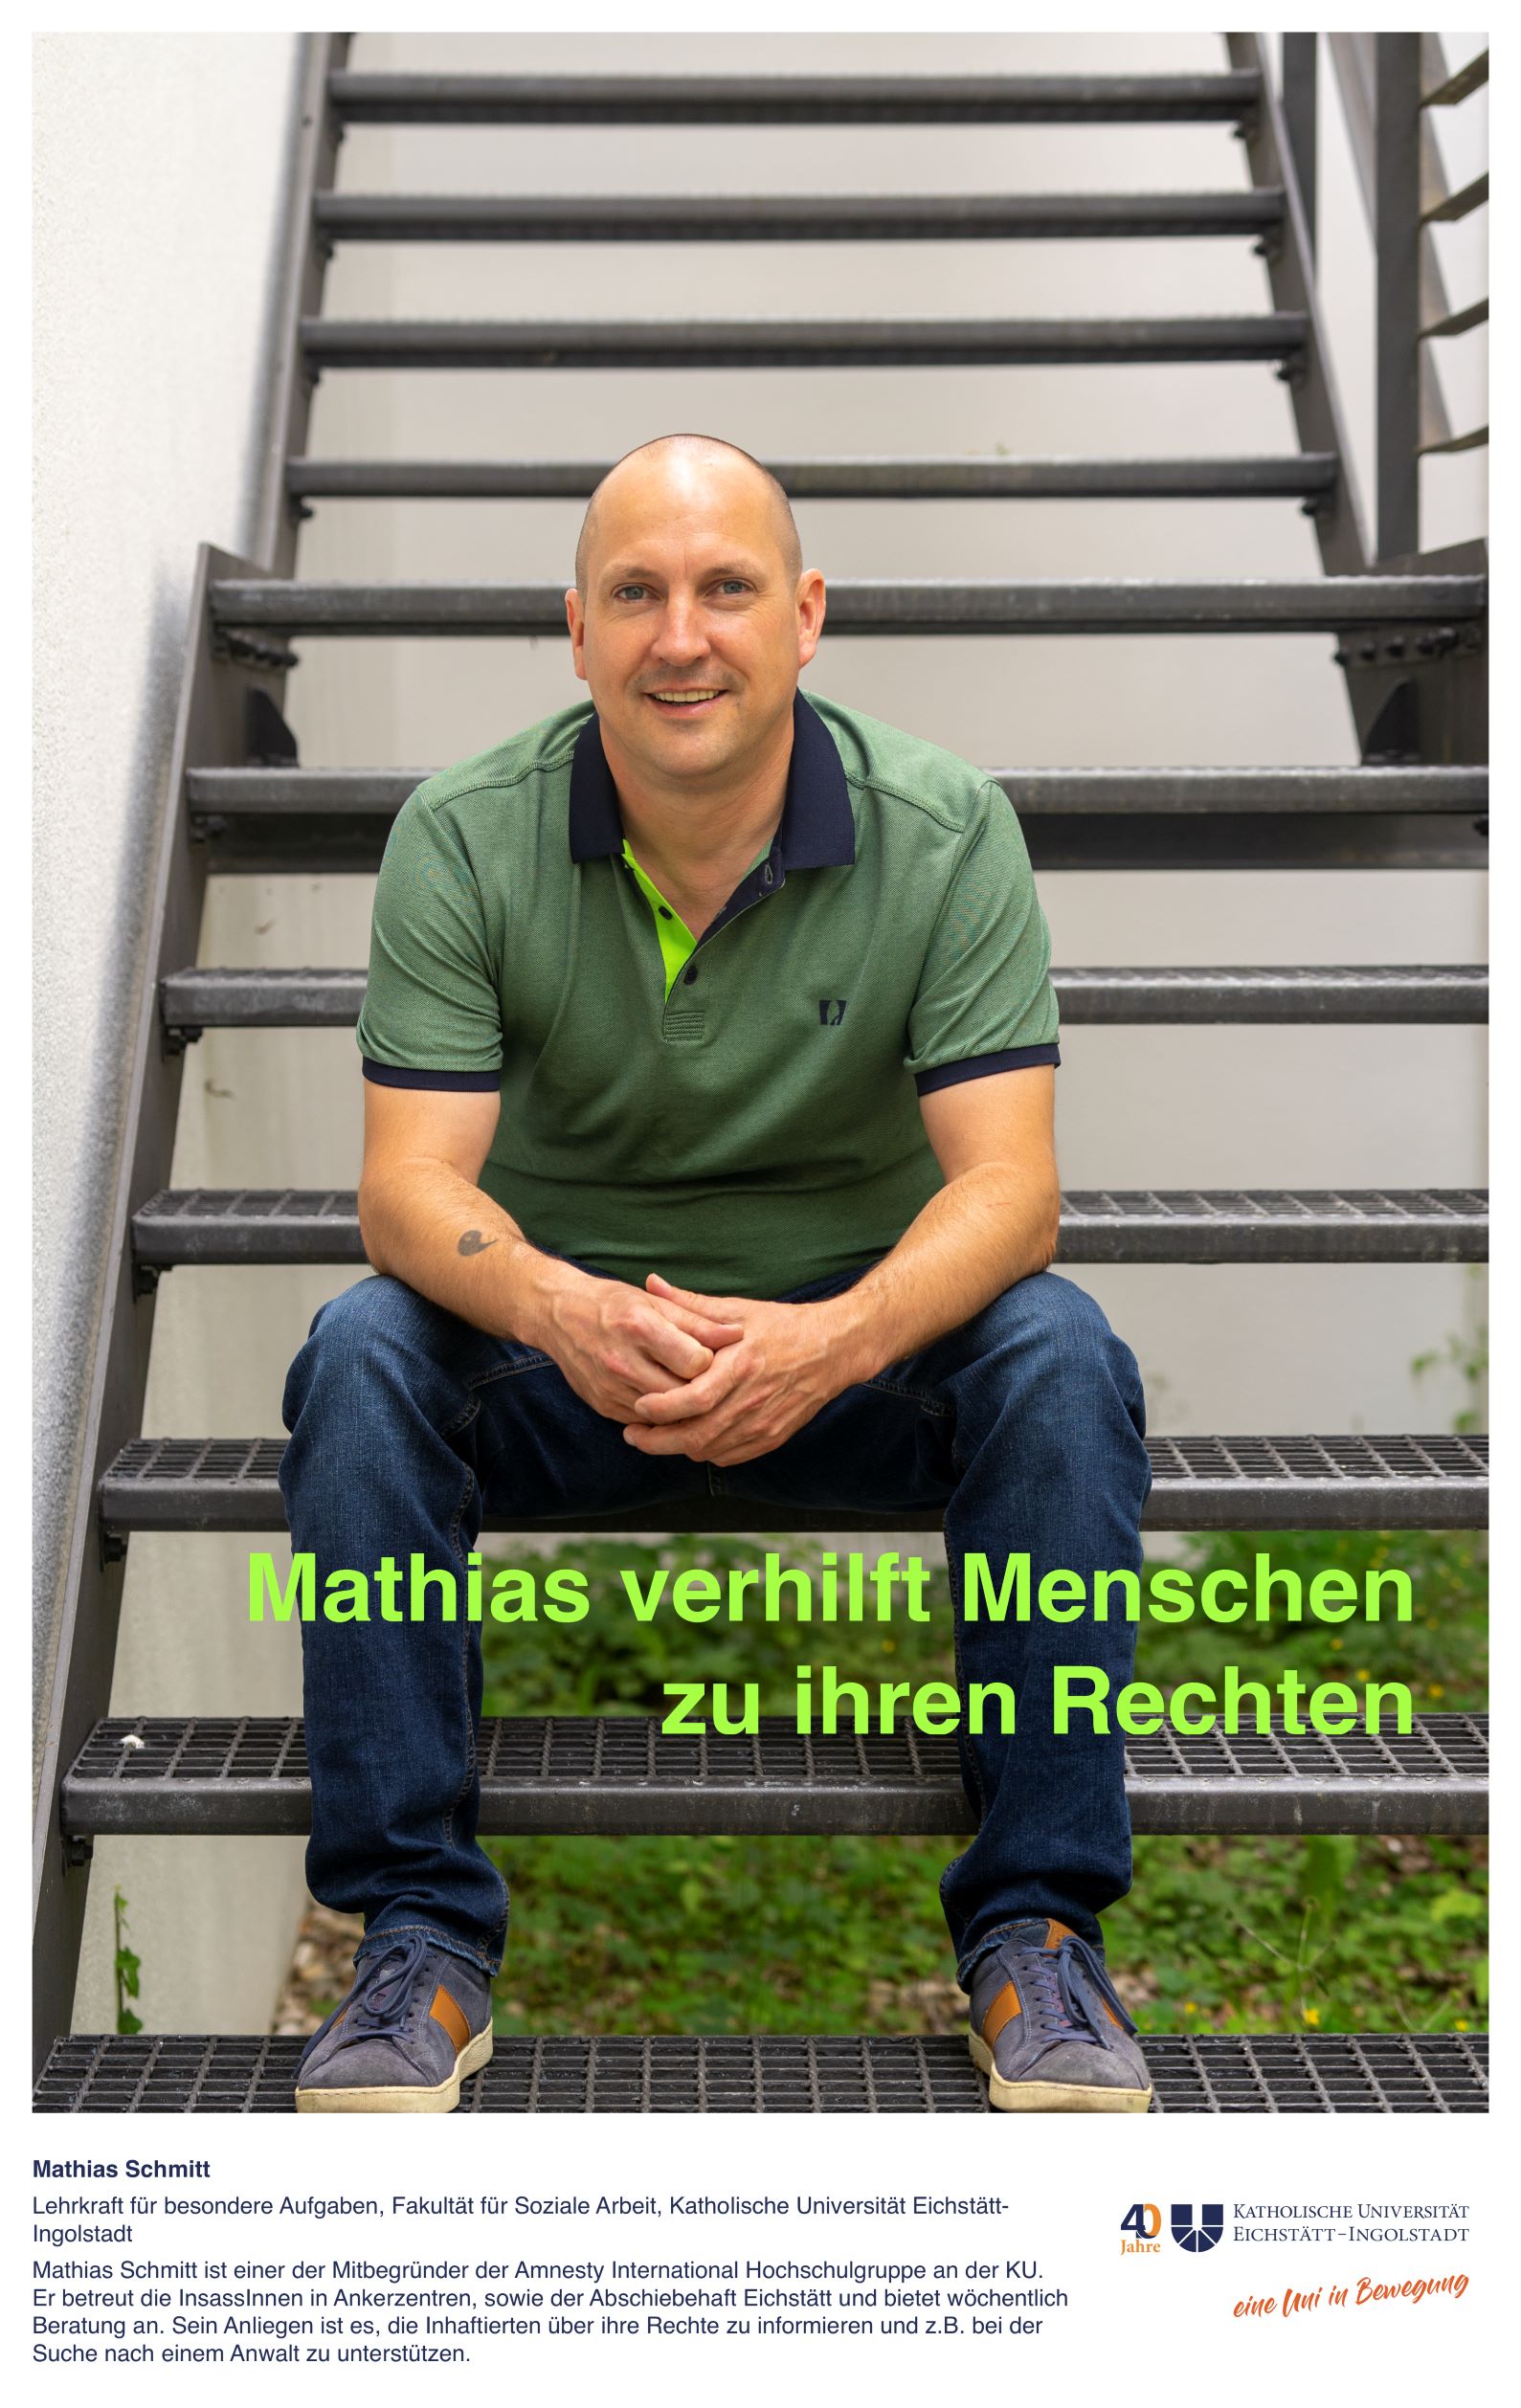 Mathias Schmitt